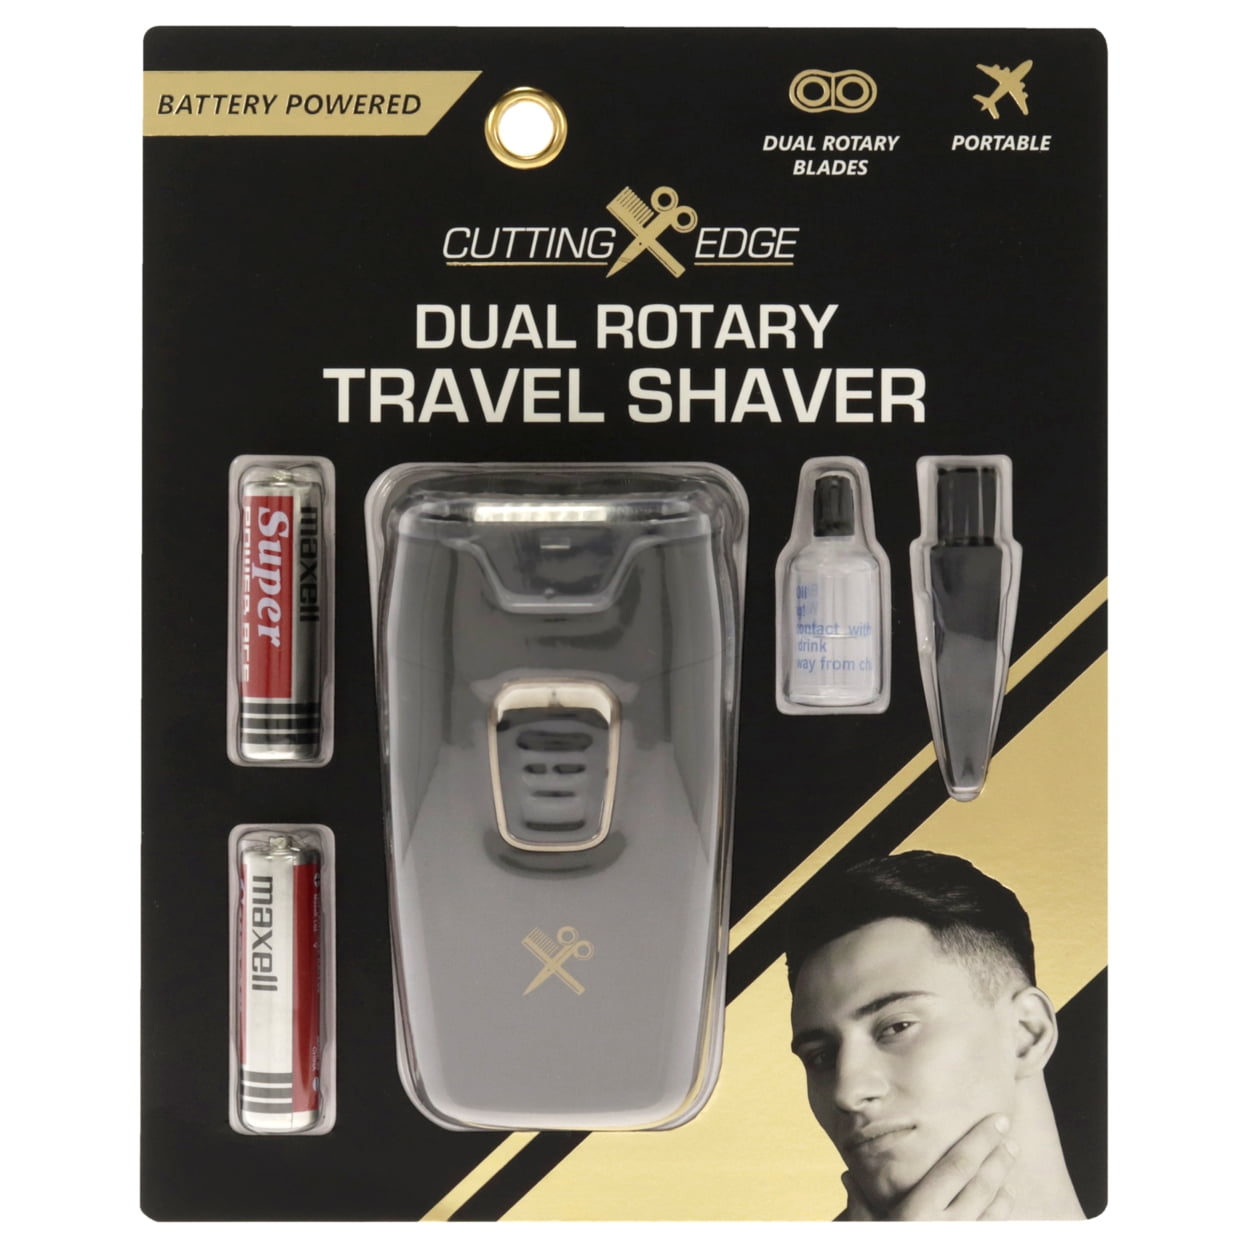 Wahl Mobile Shaver LED Indicator 45 Min Travel Shaver